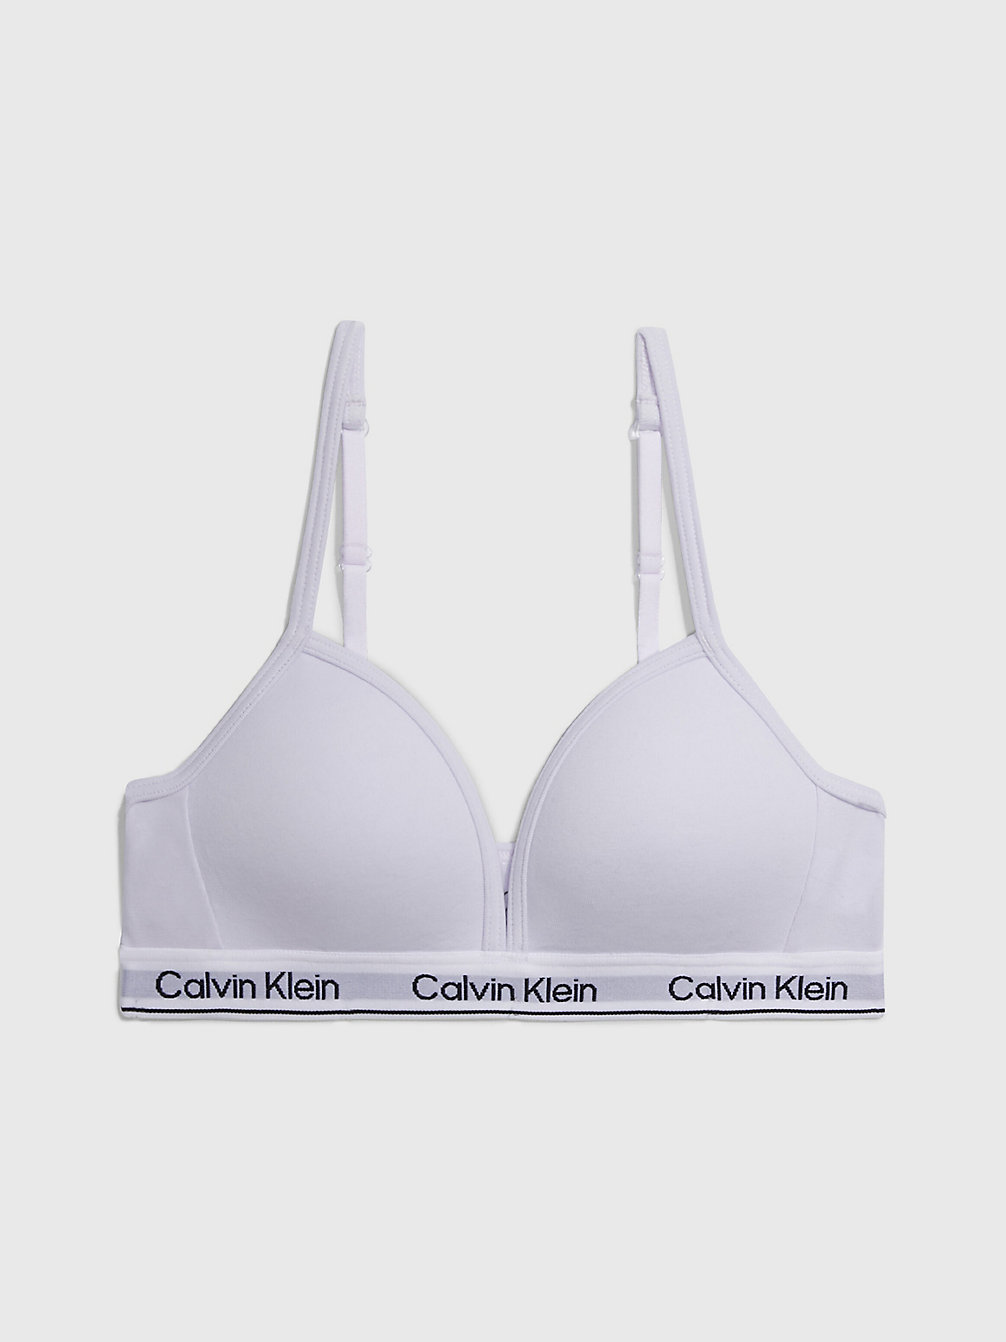 LAVENDER SPLASH > Triangel-Bh Meisjes - Modern Cotton > undefined meisjes - Calvin Klein